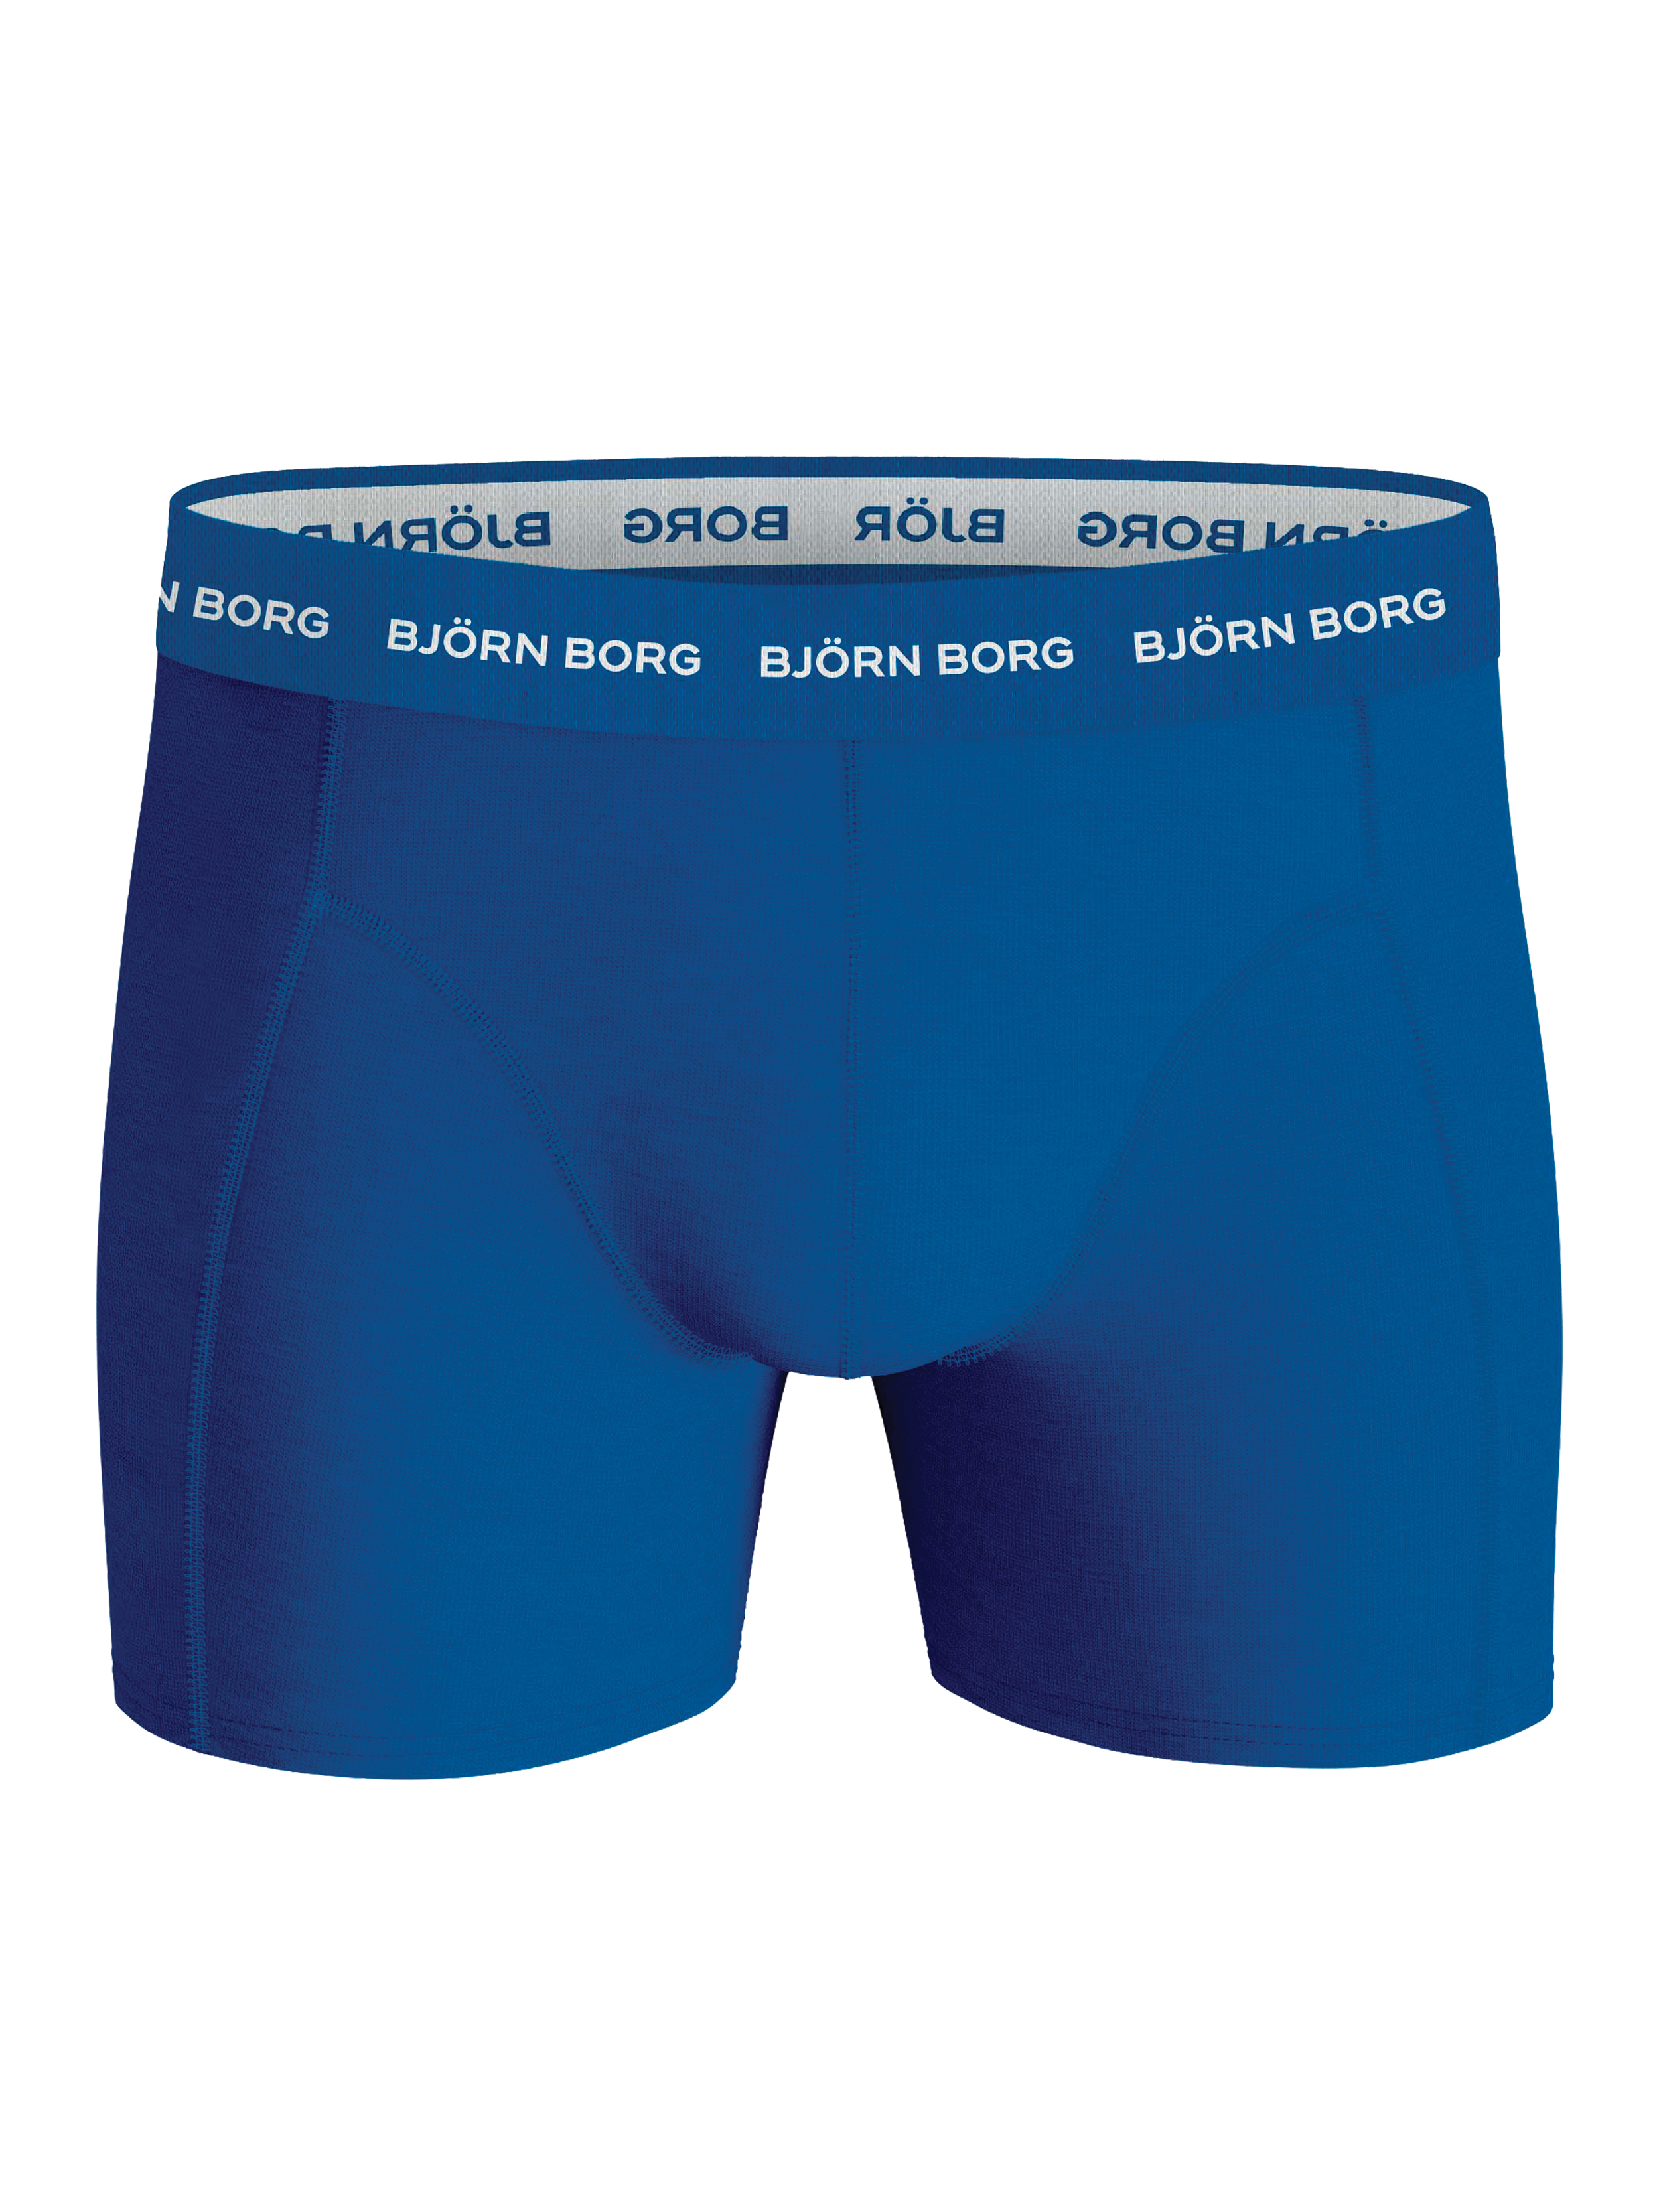 Björn Borg Campaign Underwear Elliott Reeder Model